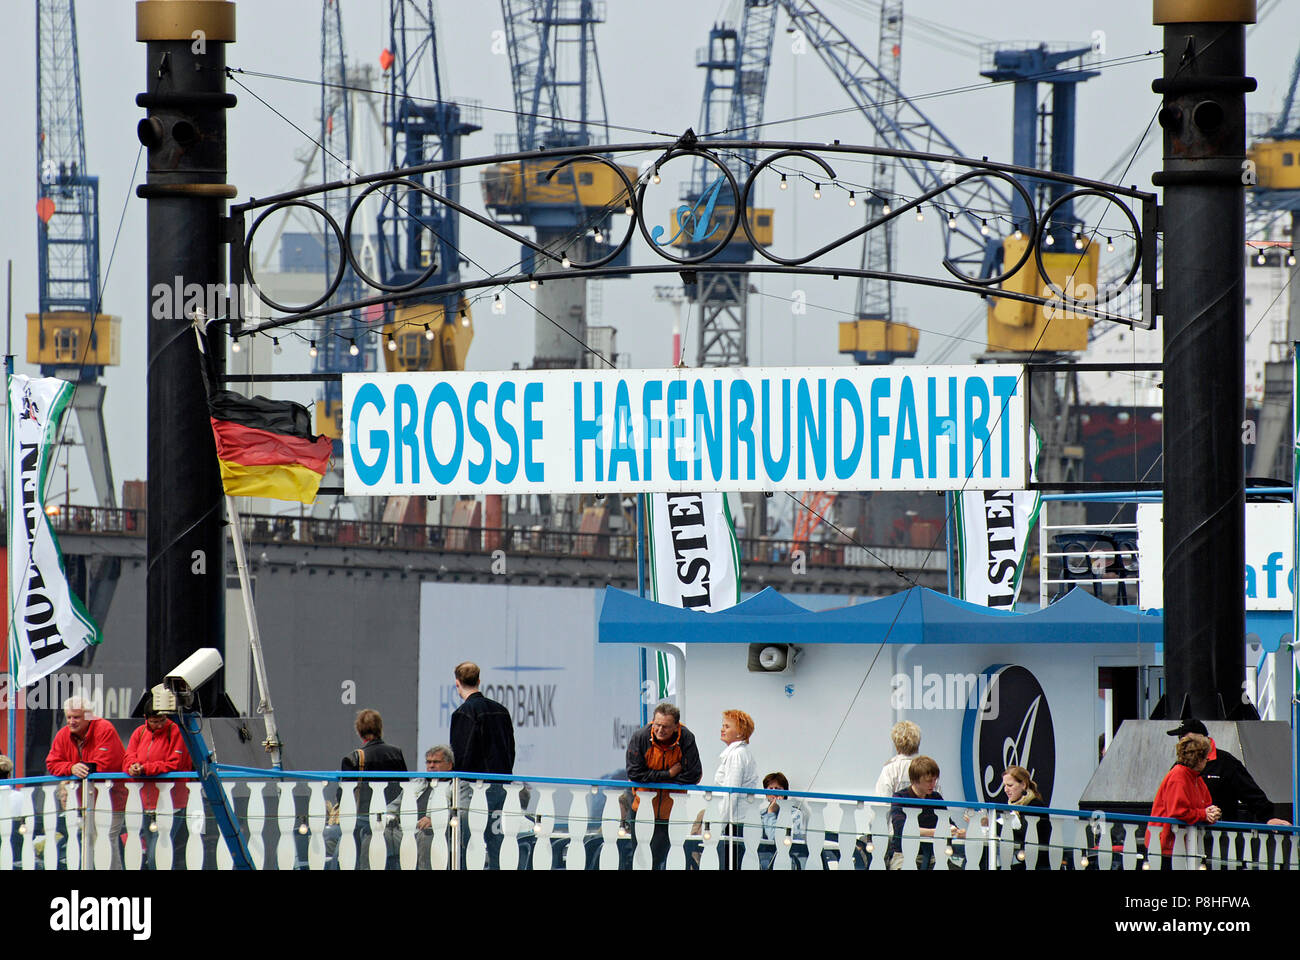 Grosse Hafenrundfahrt, Schild eine Einems Raddampfer der Reederei Abicht an den Landungsbrücken im Hamburger Hafen. Stockfoto